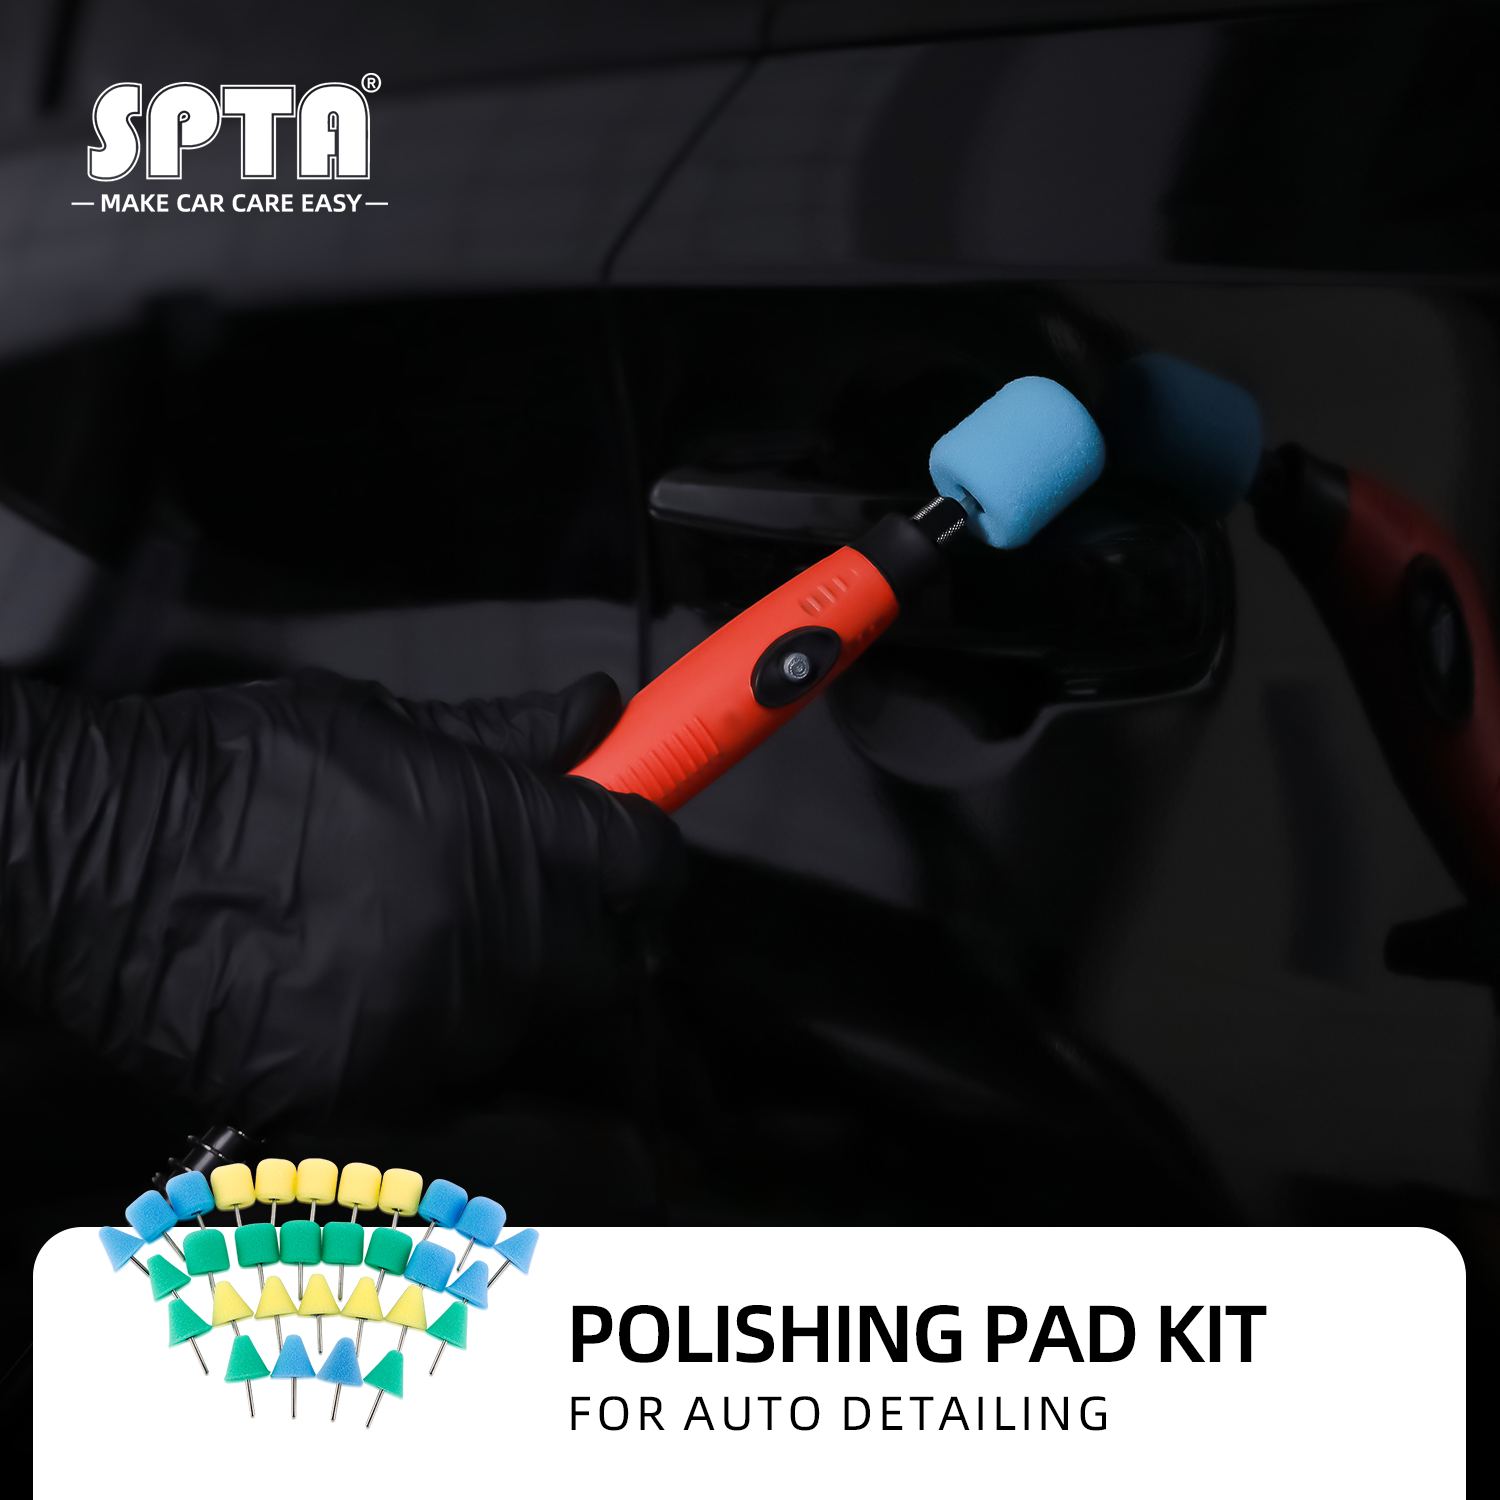 SPTA Drill polishing kit, 11Pcs 3-Inch Buffing Lebanon